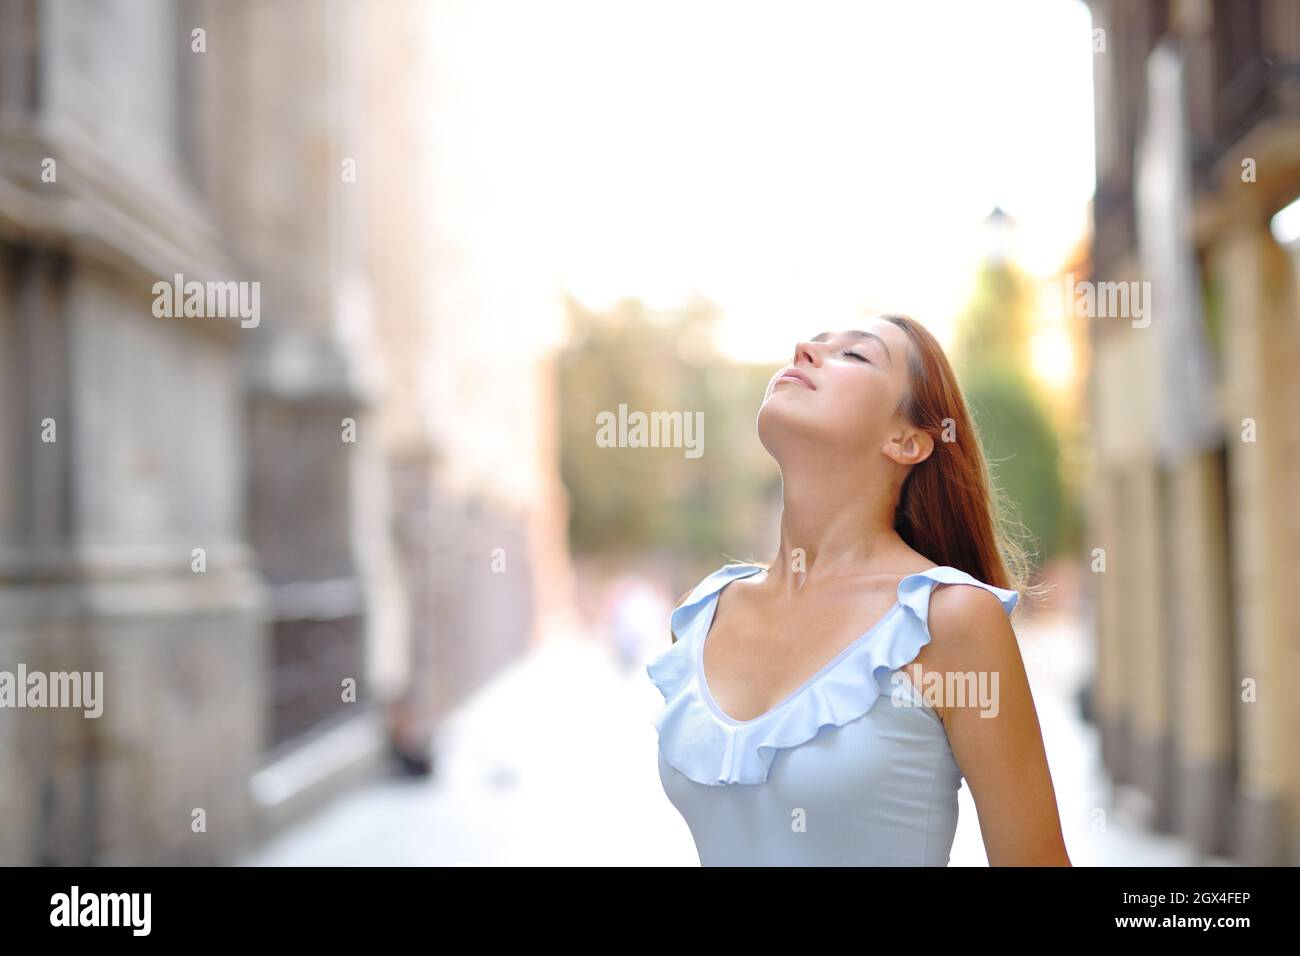 Femme se détendant respirer de l'air frais dans la rue Banque D'Images